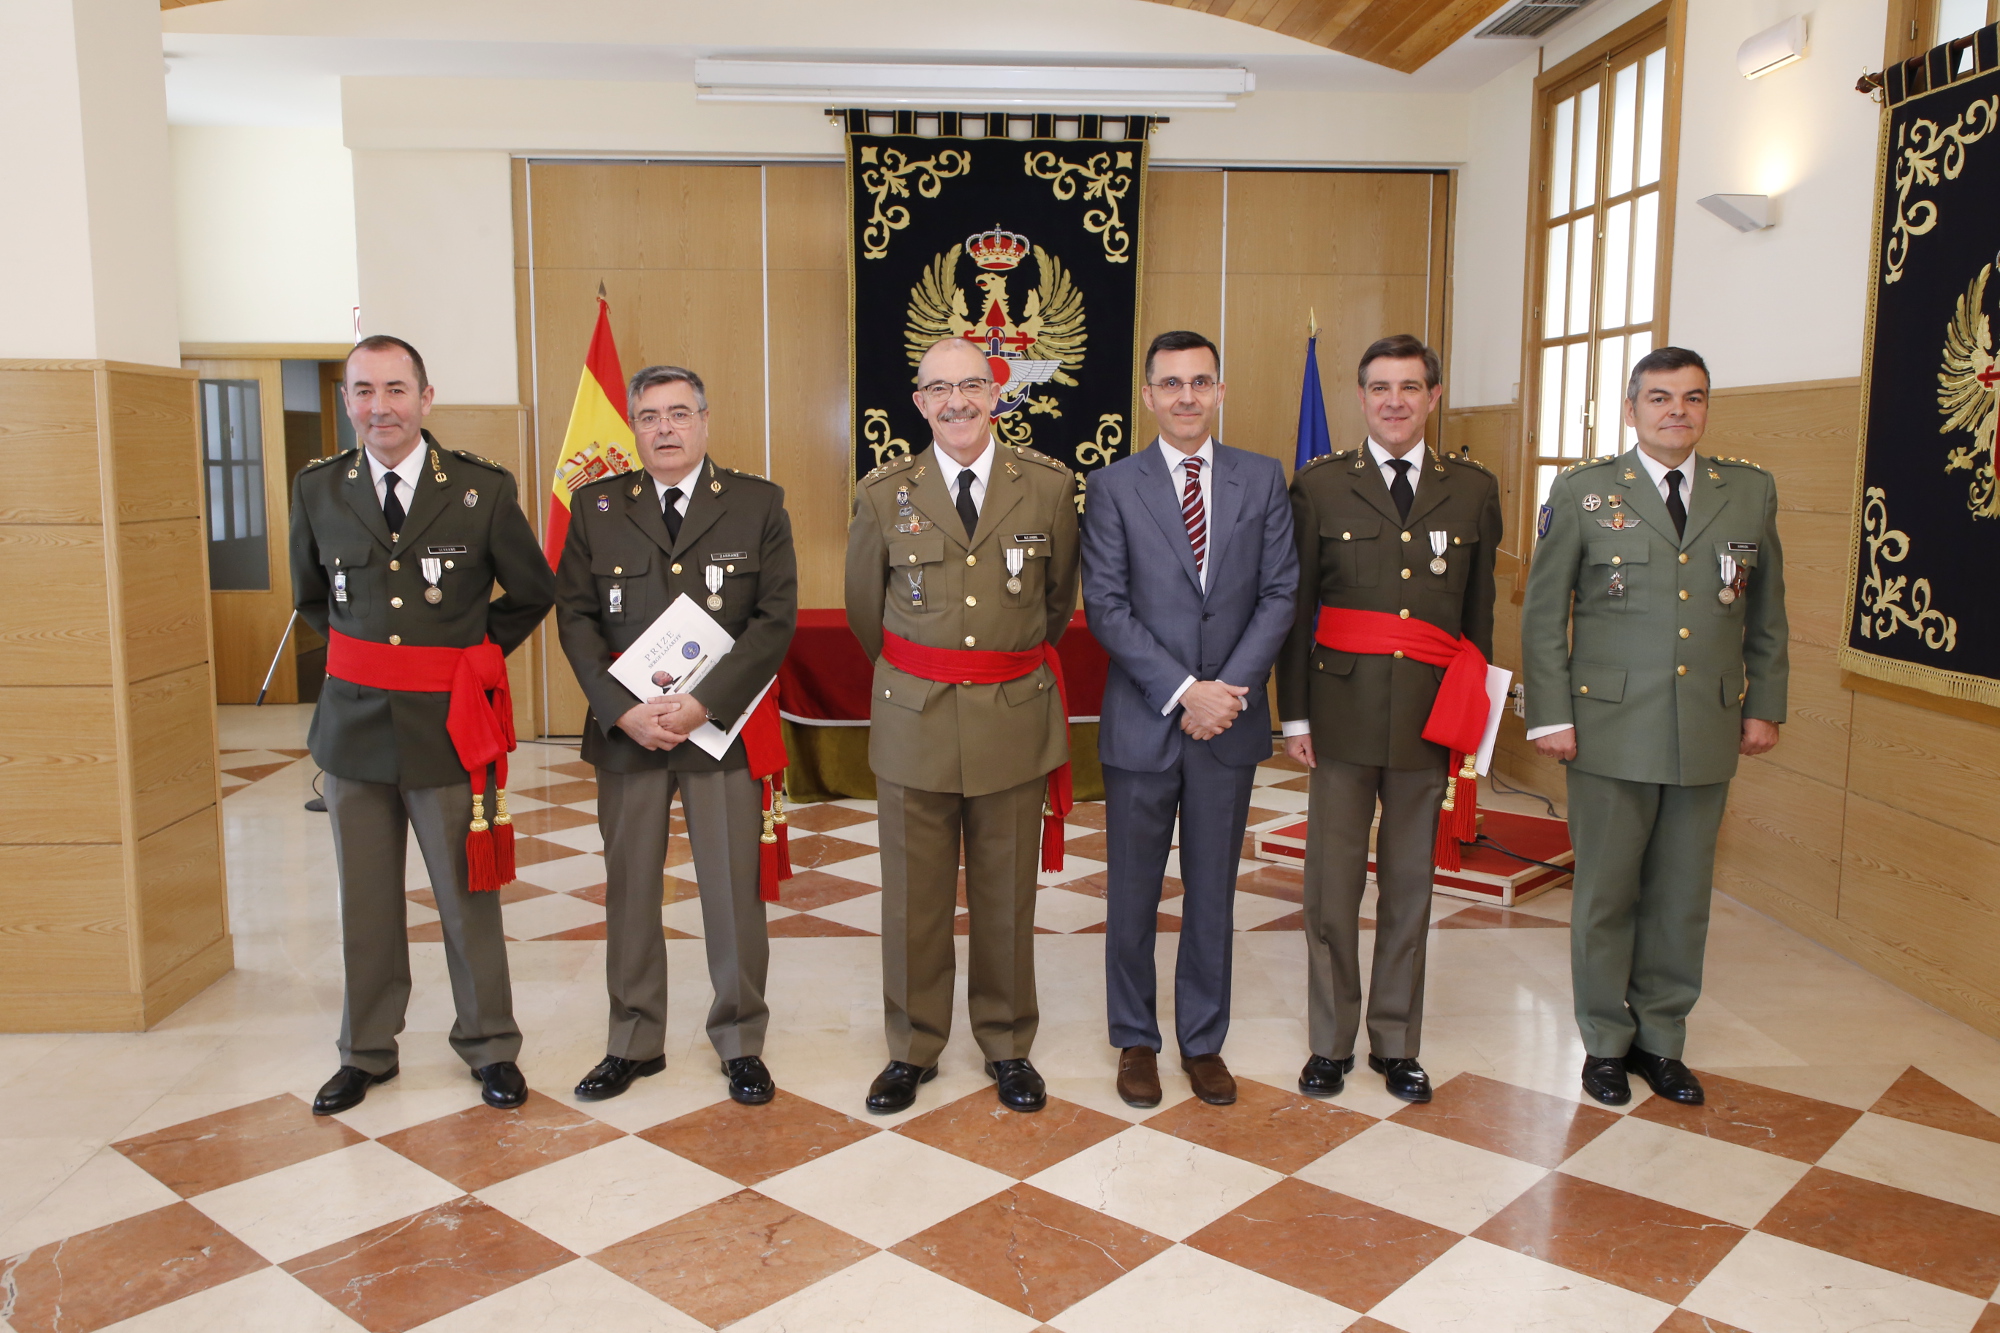 Cinco militares españoles reciben el premio Serge Lazareff de la OTAN